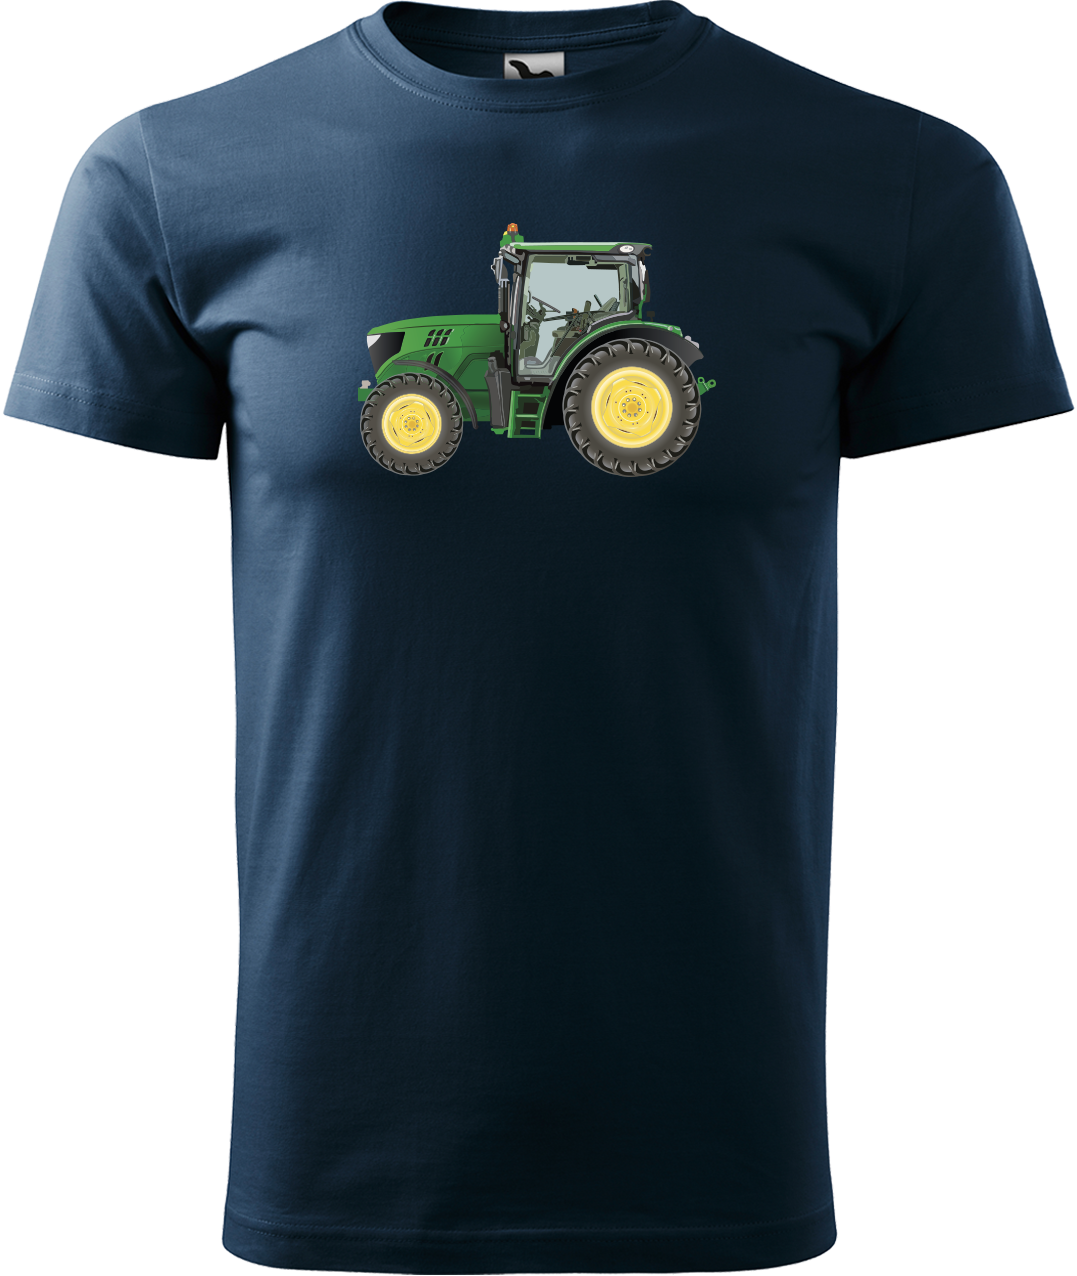 Tričko s traktorem - Zelený traktor Velikost: S, Barva: Námořní modrá (02)